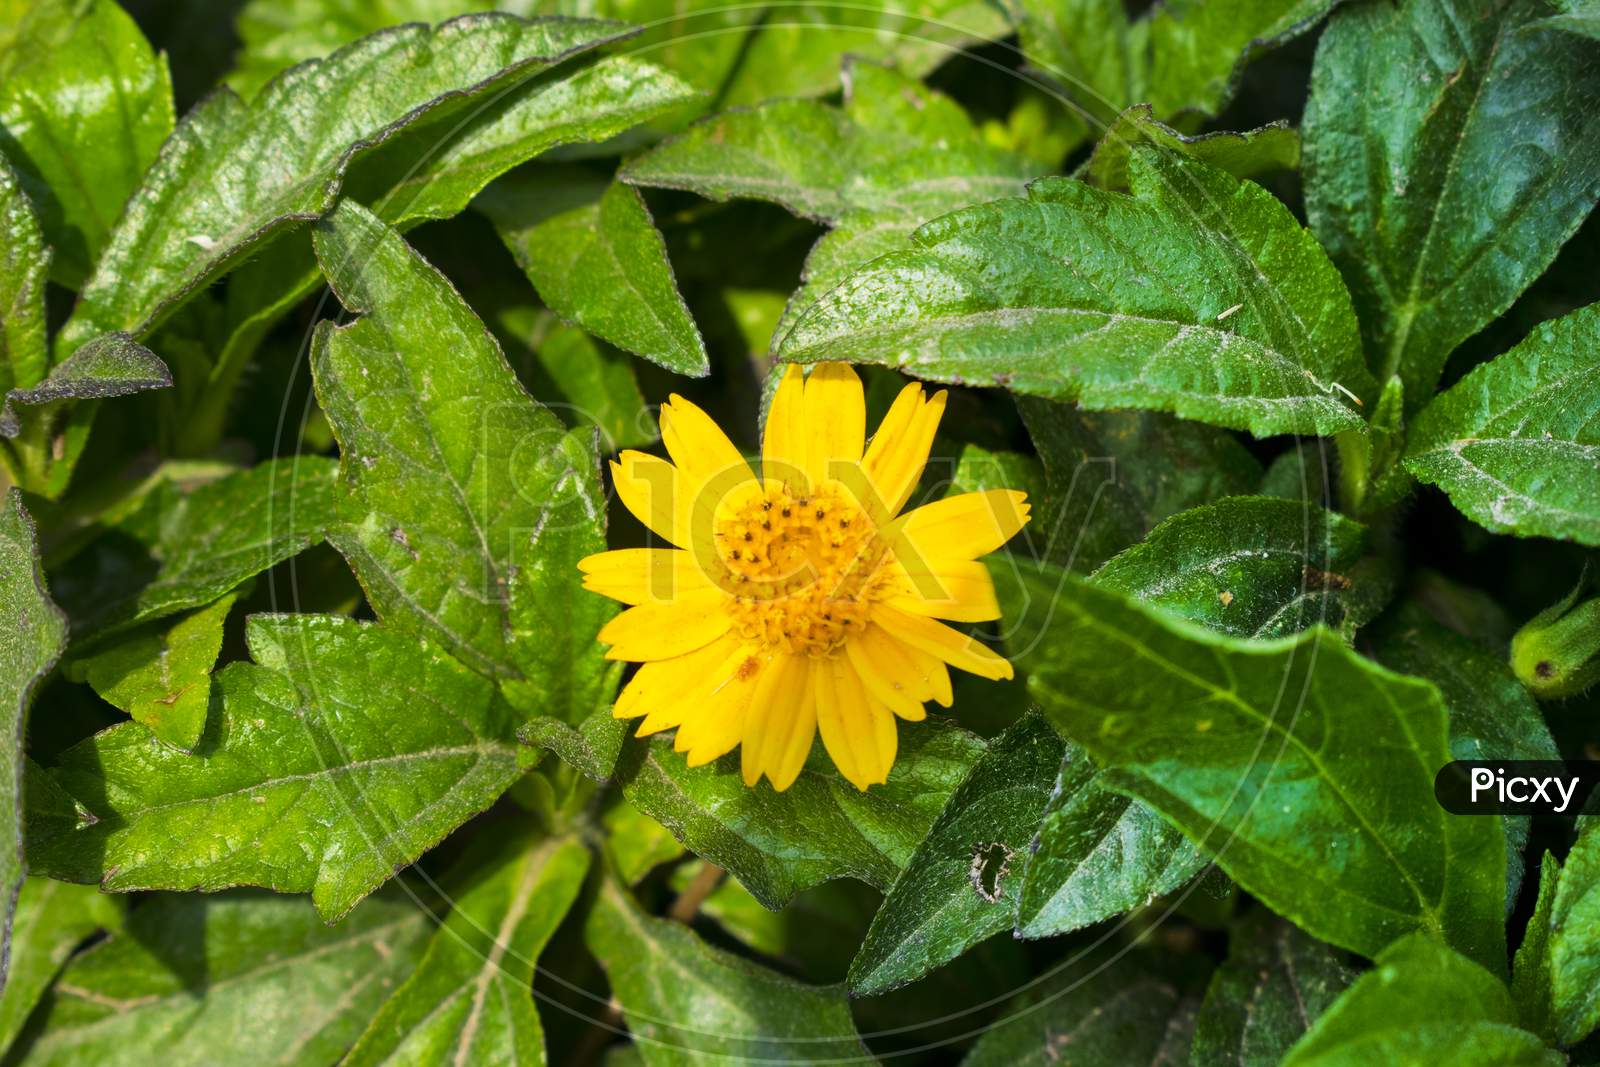 Beautiful yellow flower between greenbleaves